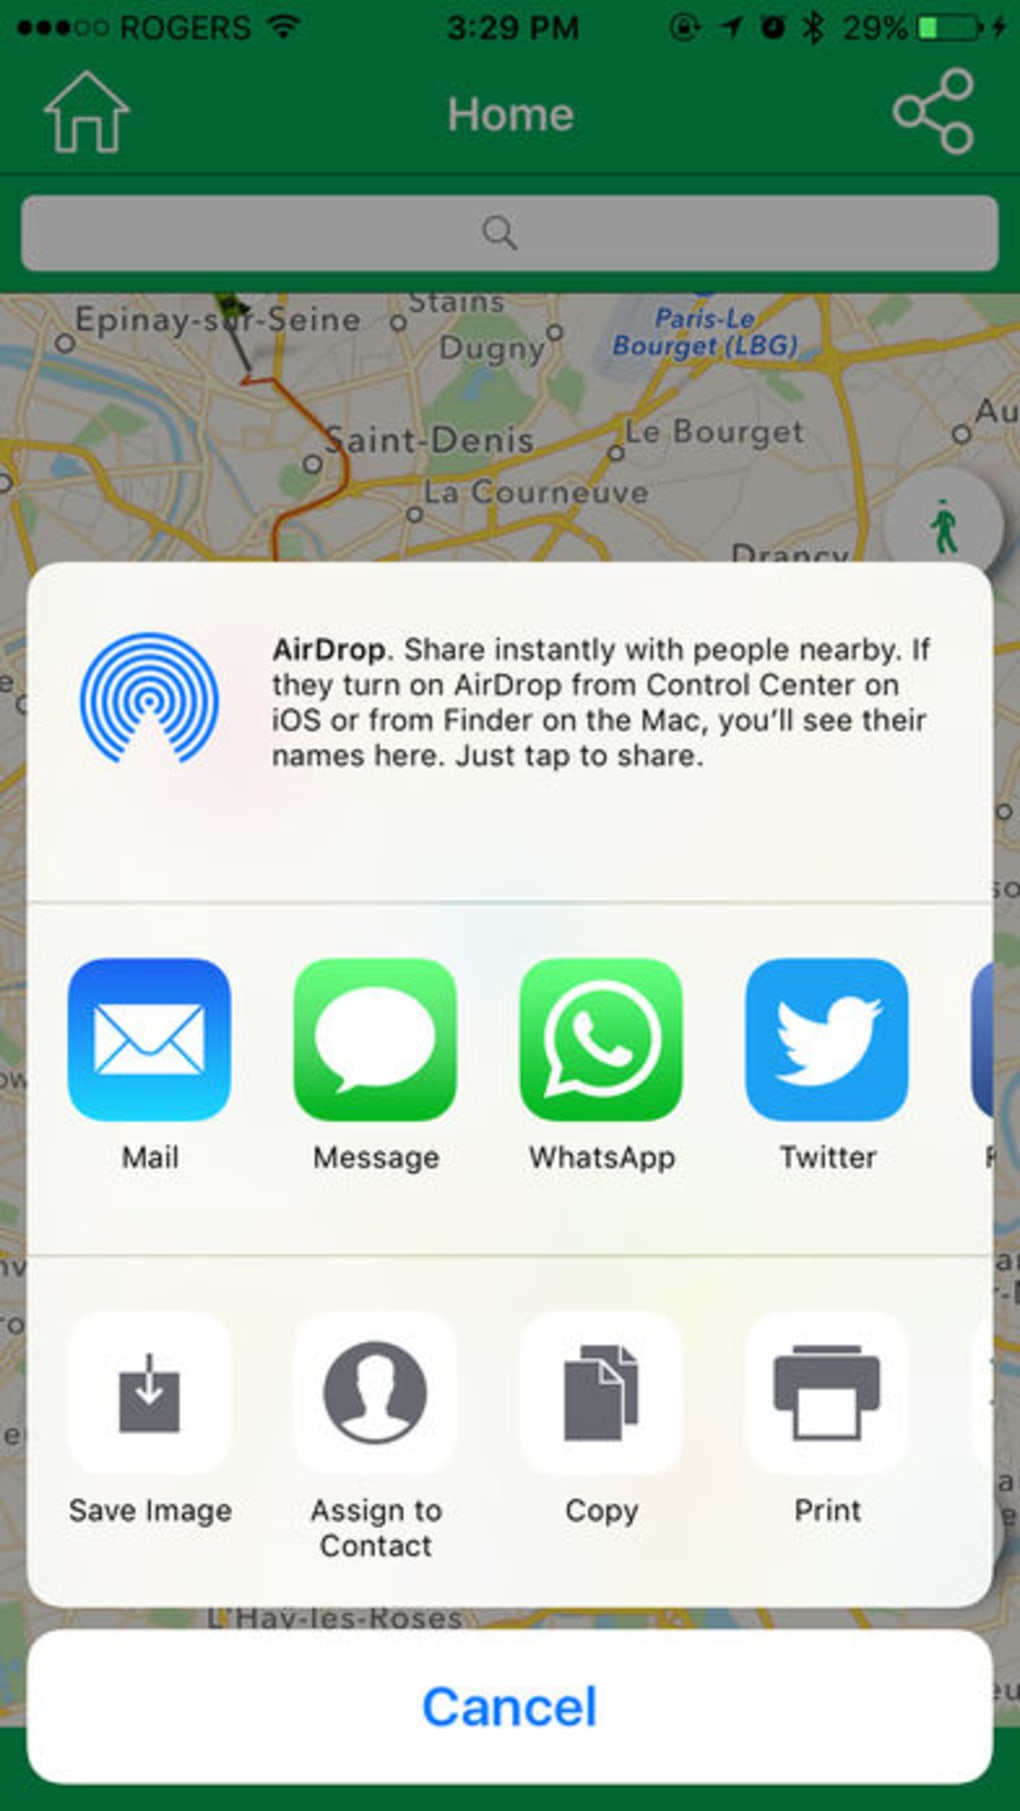 iphone fake location app